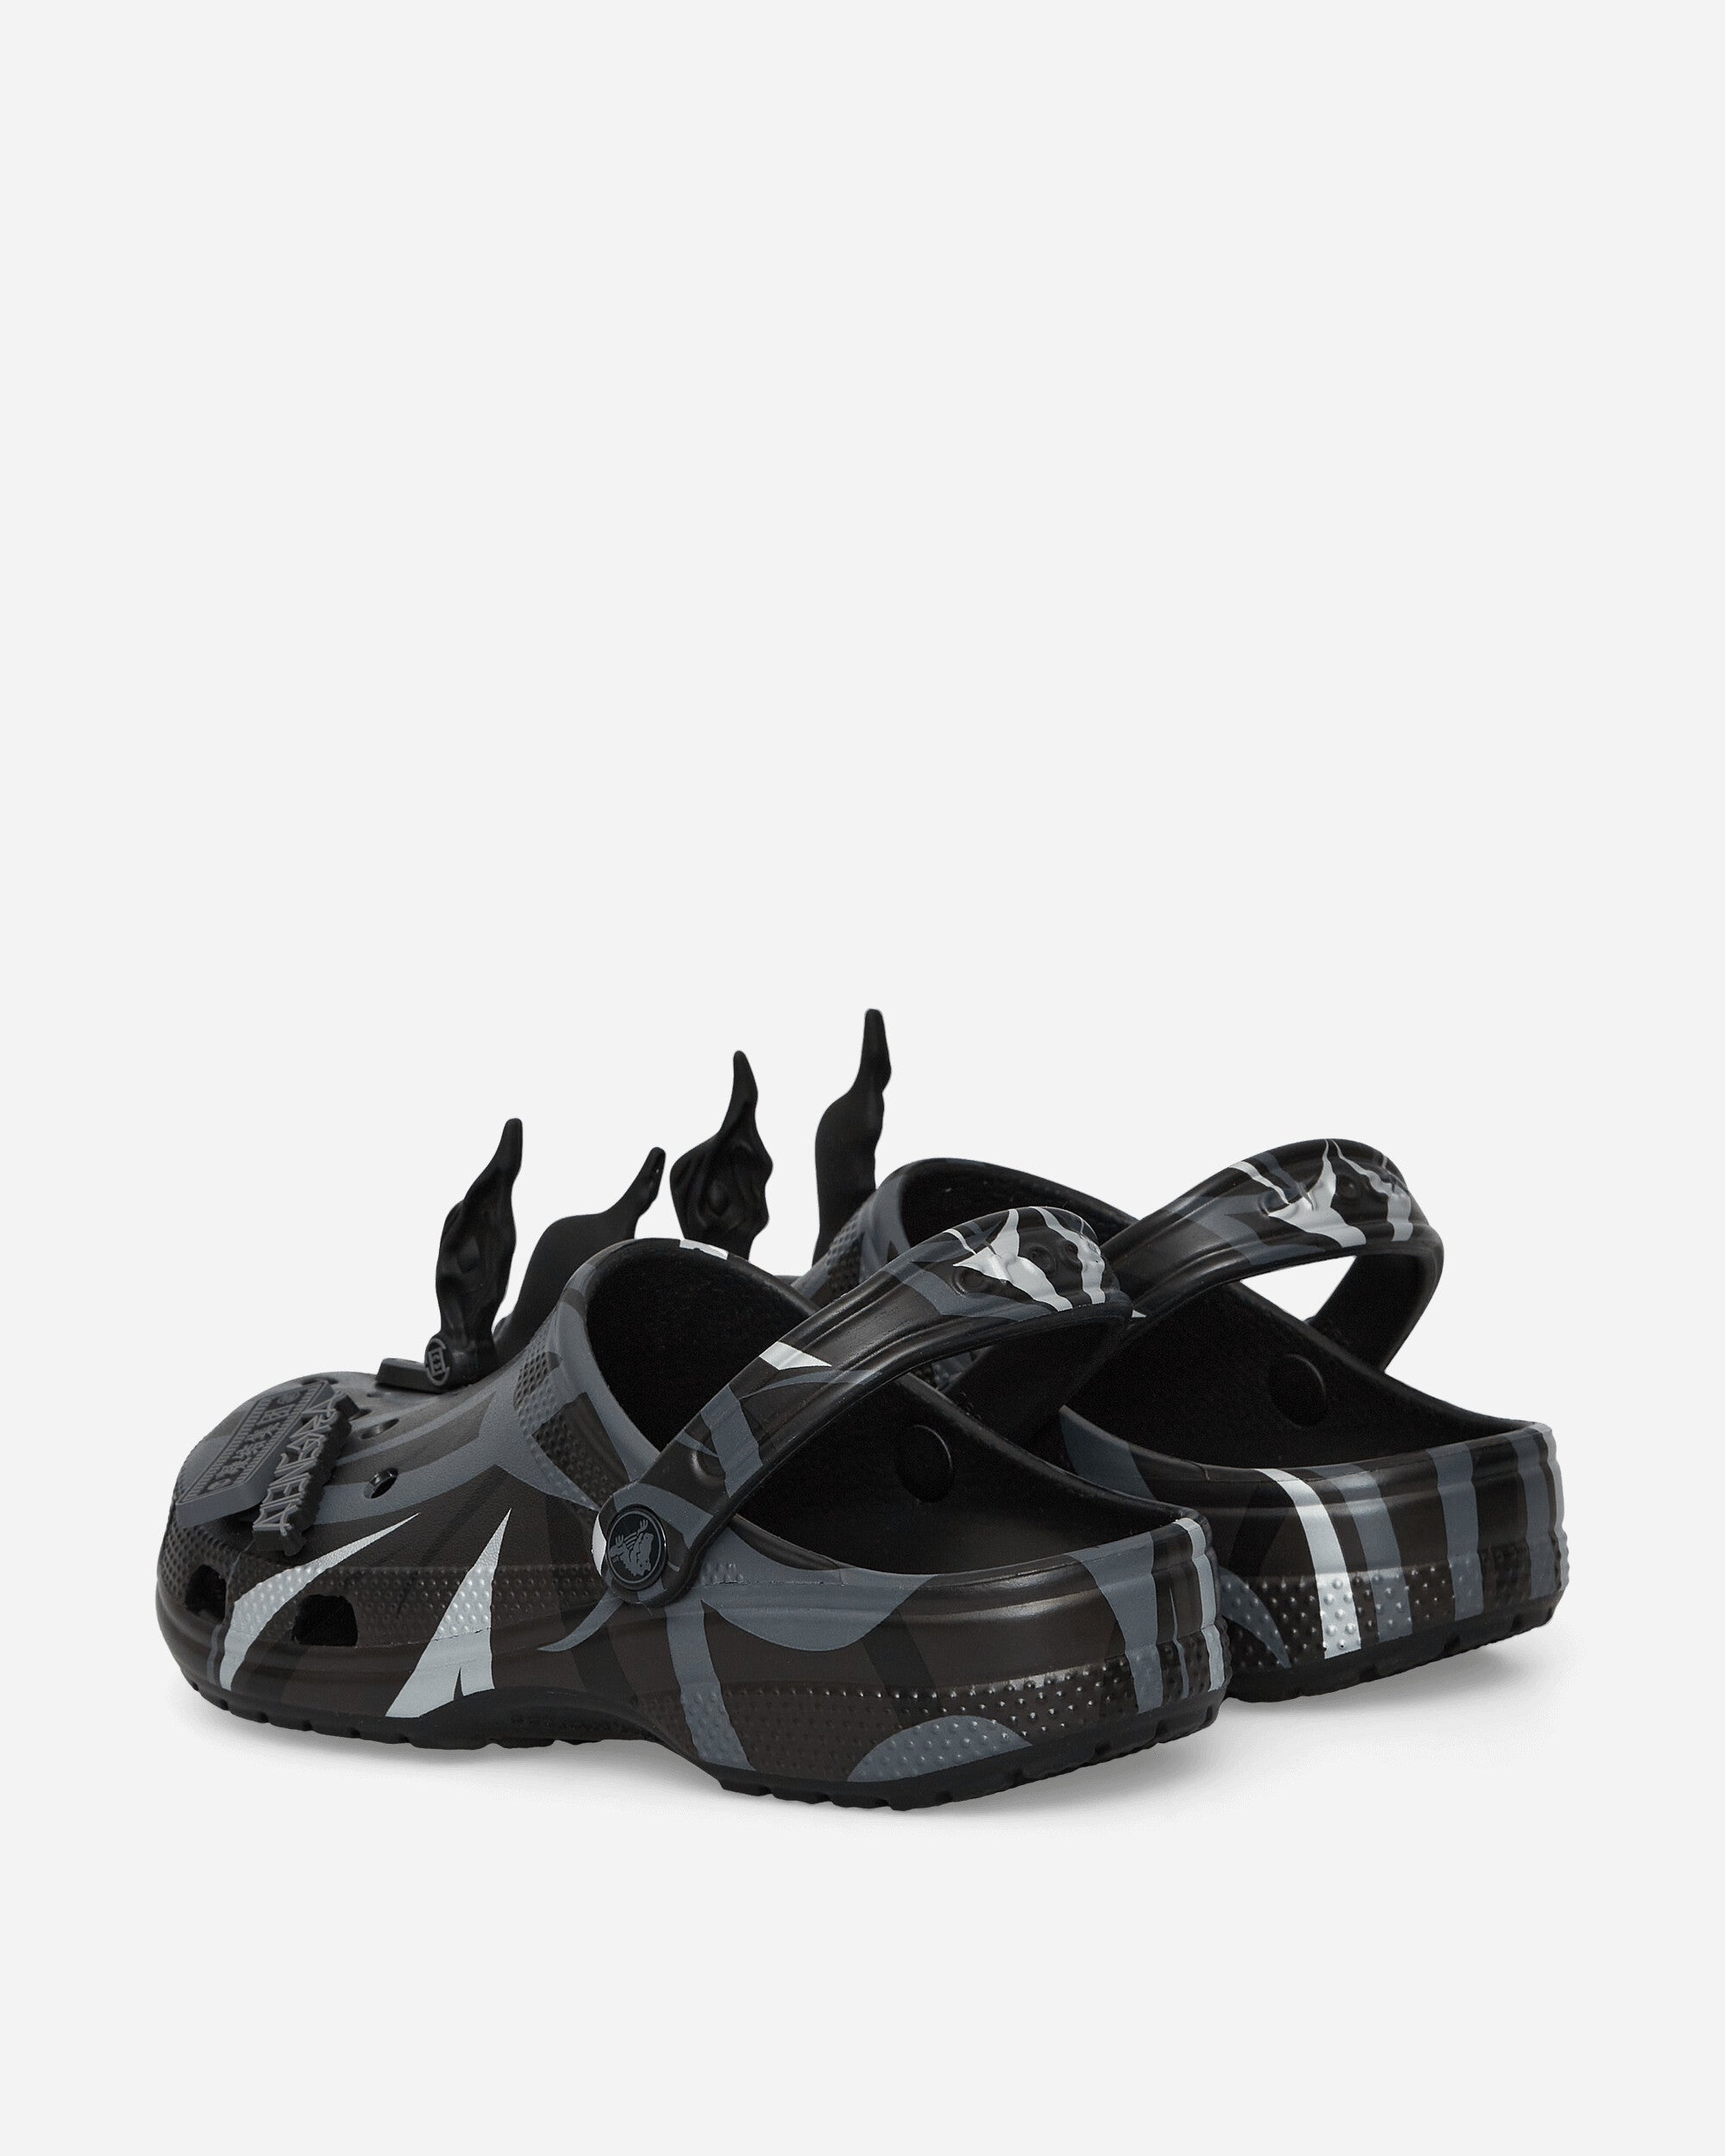 Crocs Clot X Crocs Classic Clog Black Sandals and Slides Sandals and Mules 208700 001